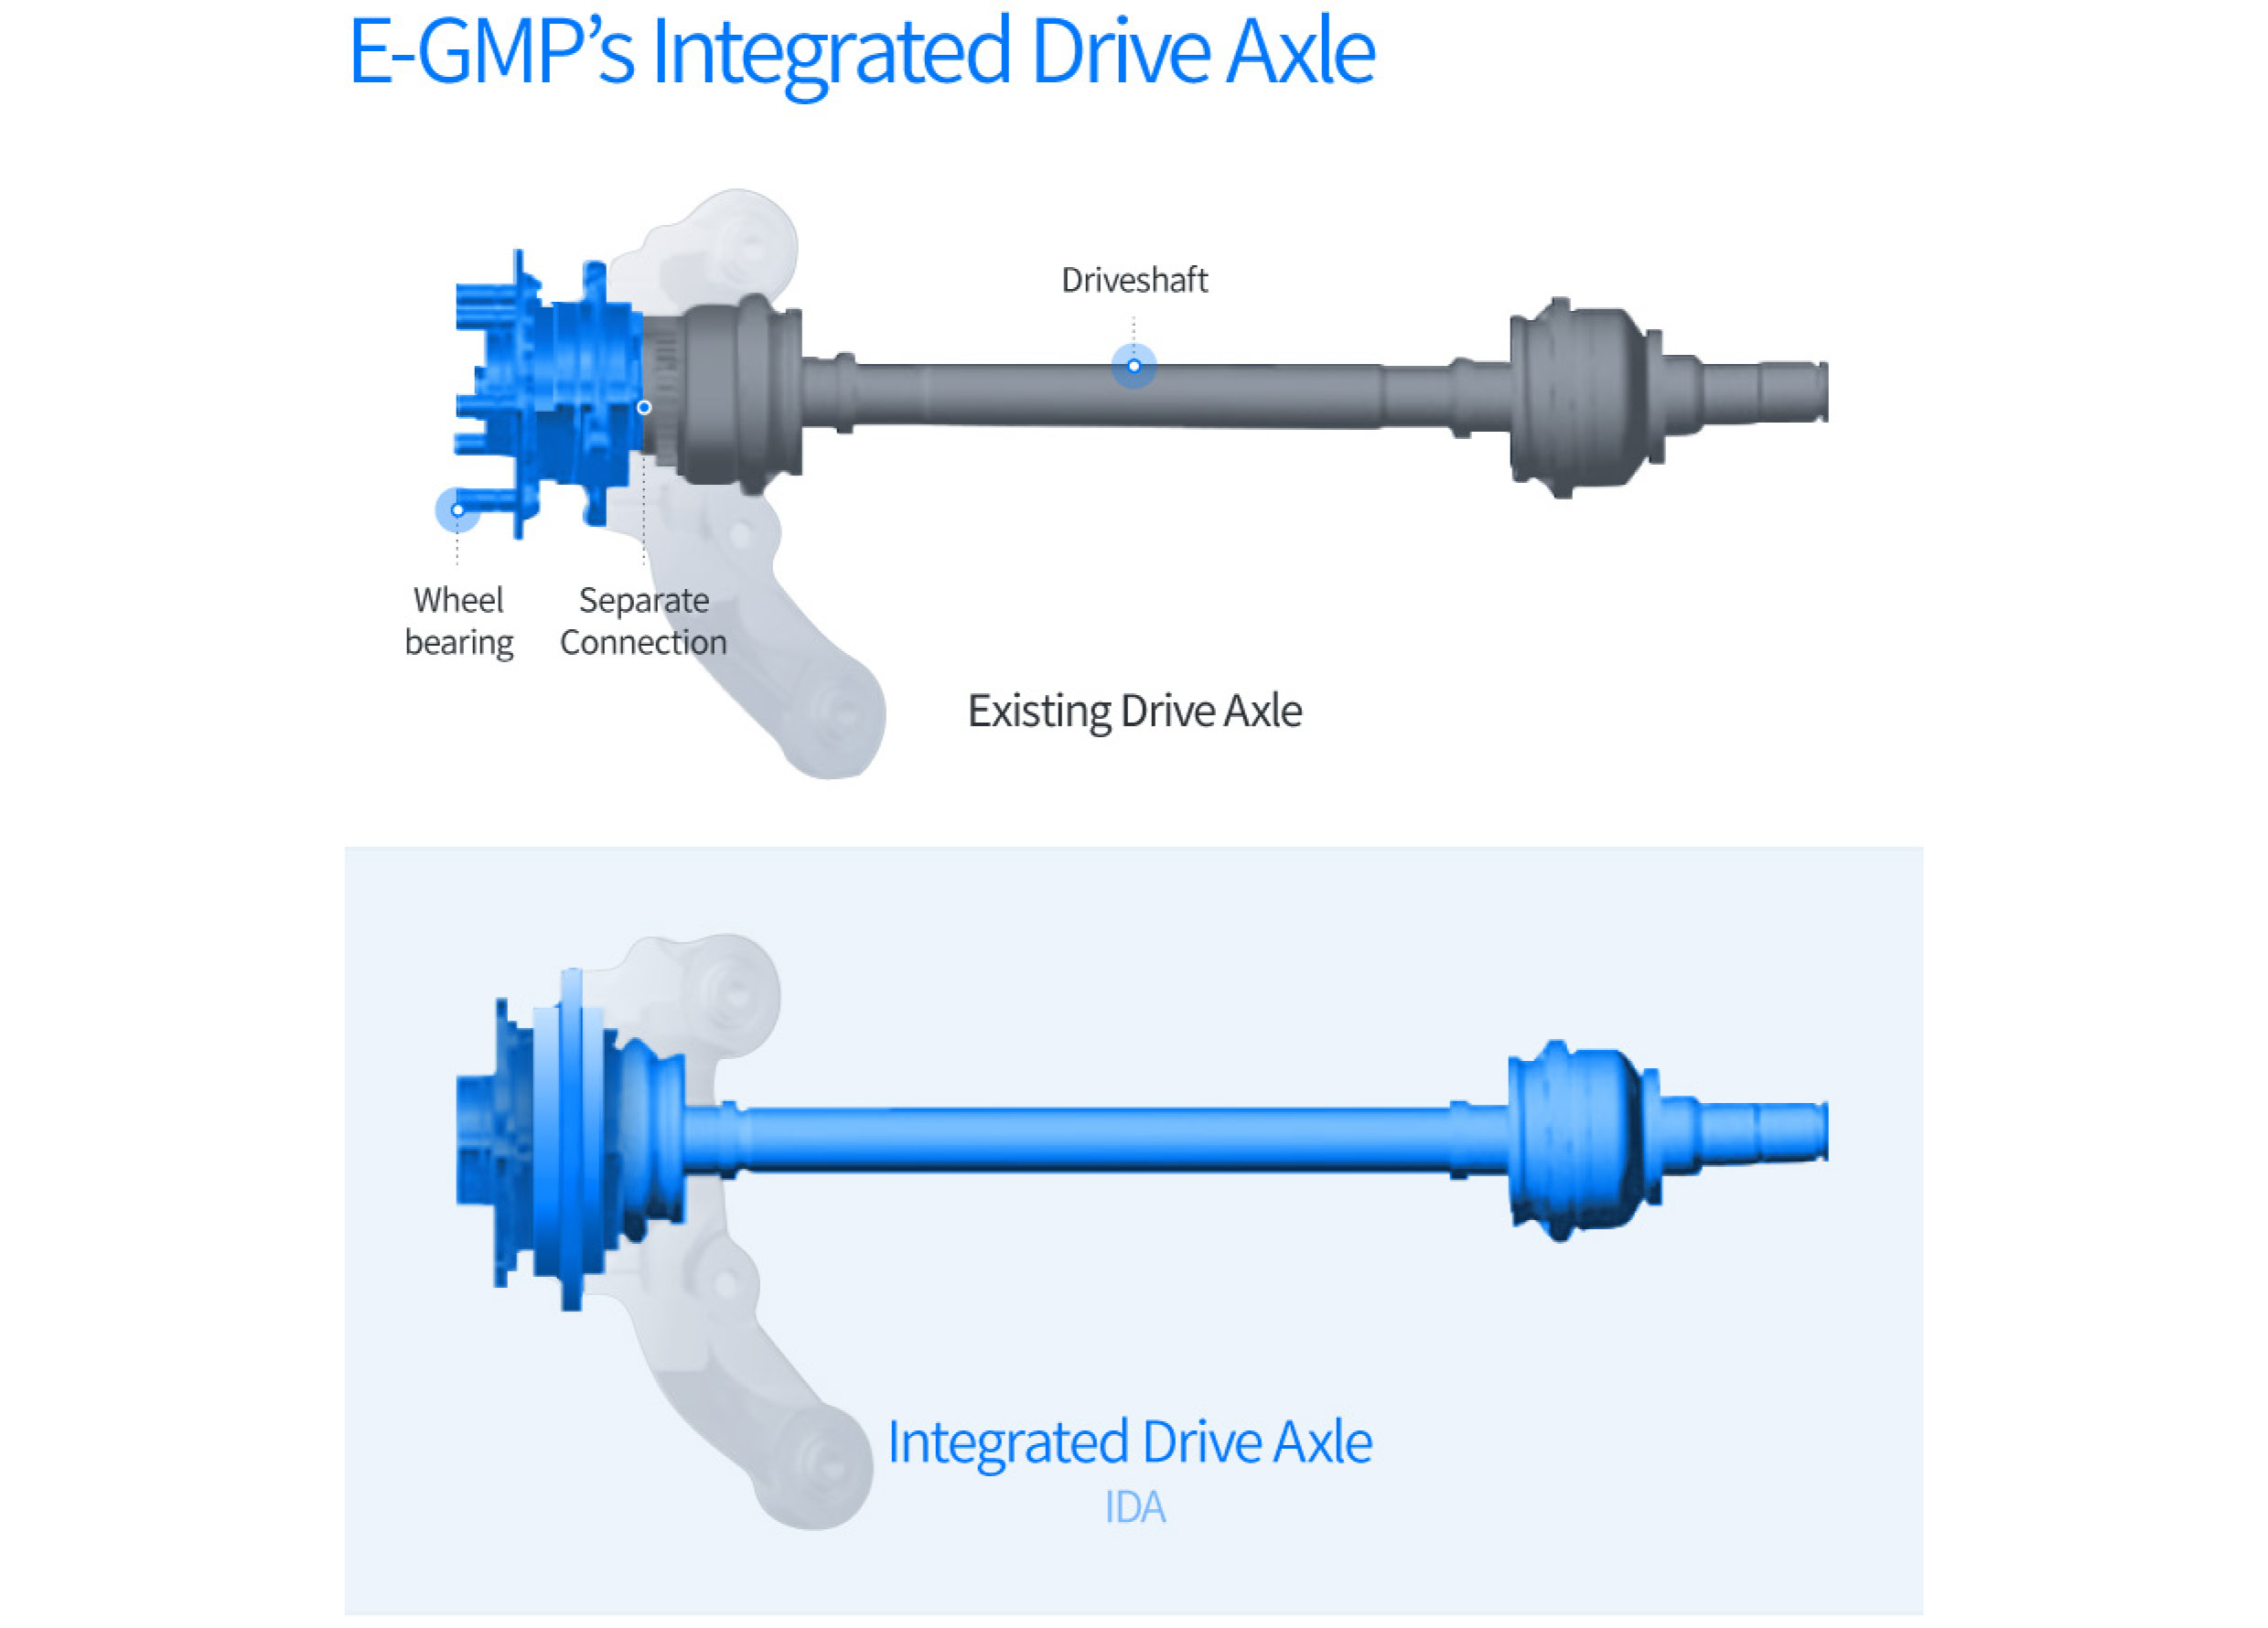 E-GMP's Feature Integrated Drive Axle